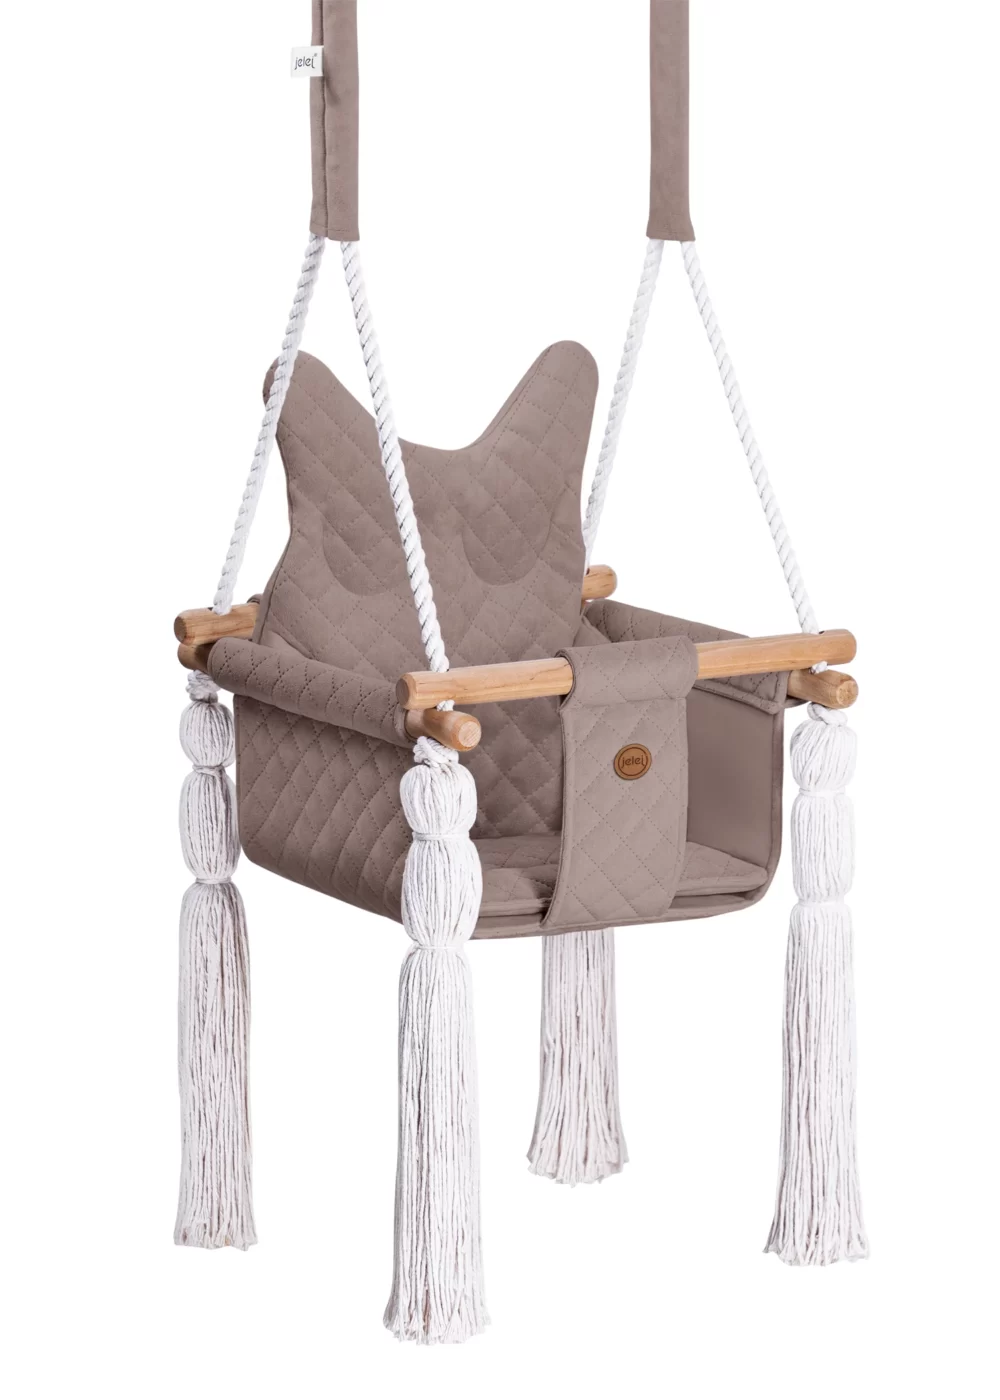 jelej® HooHoo Beige wooden baby swing owl shape pillow